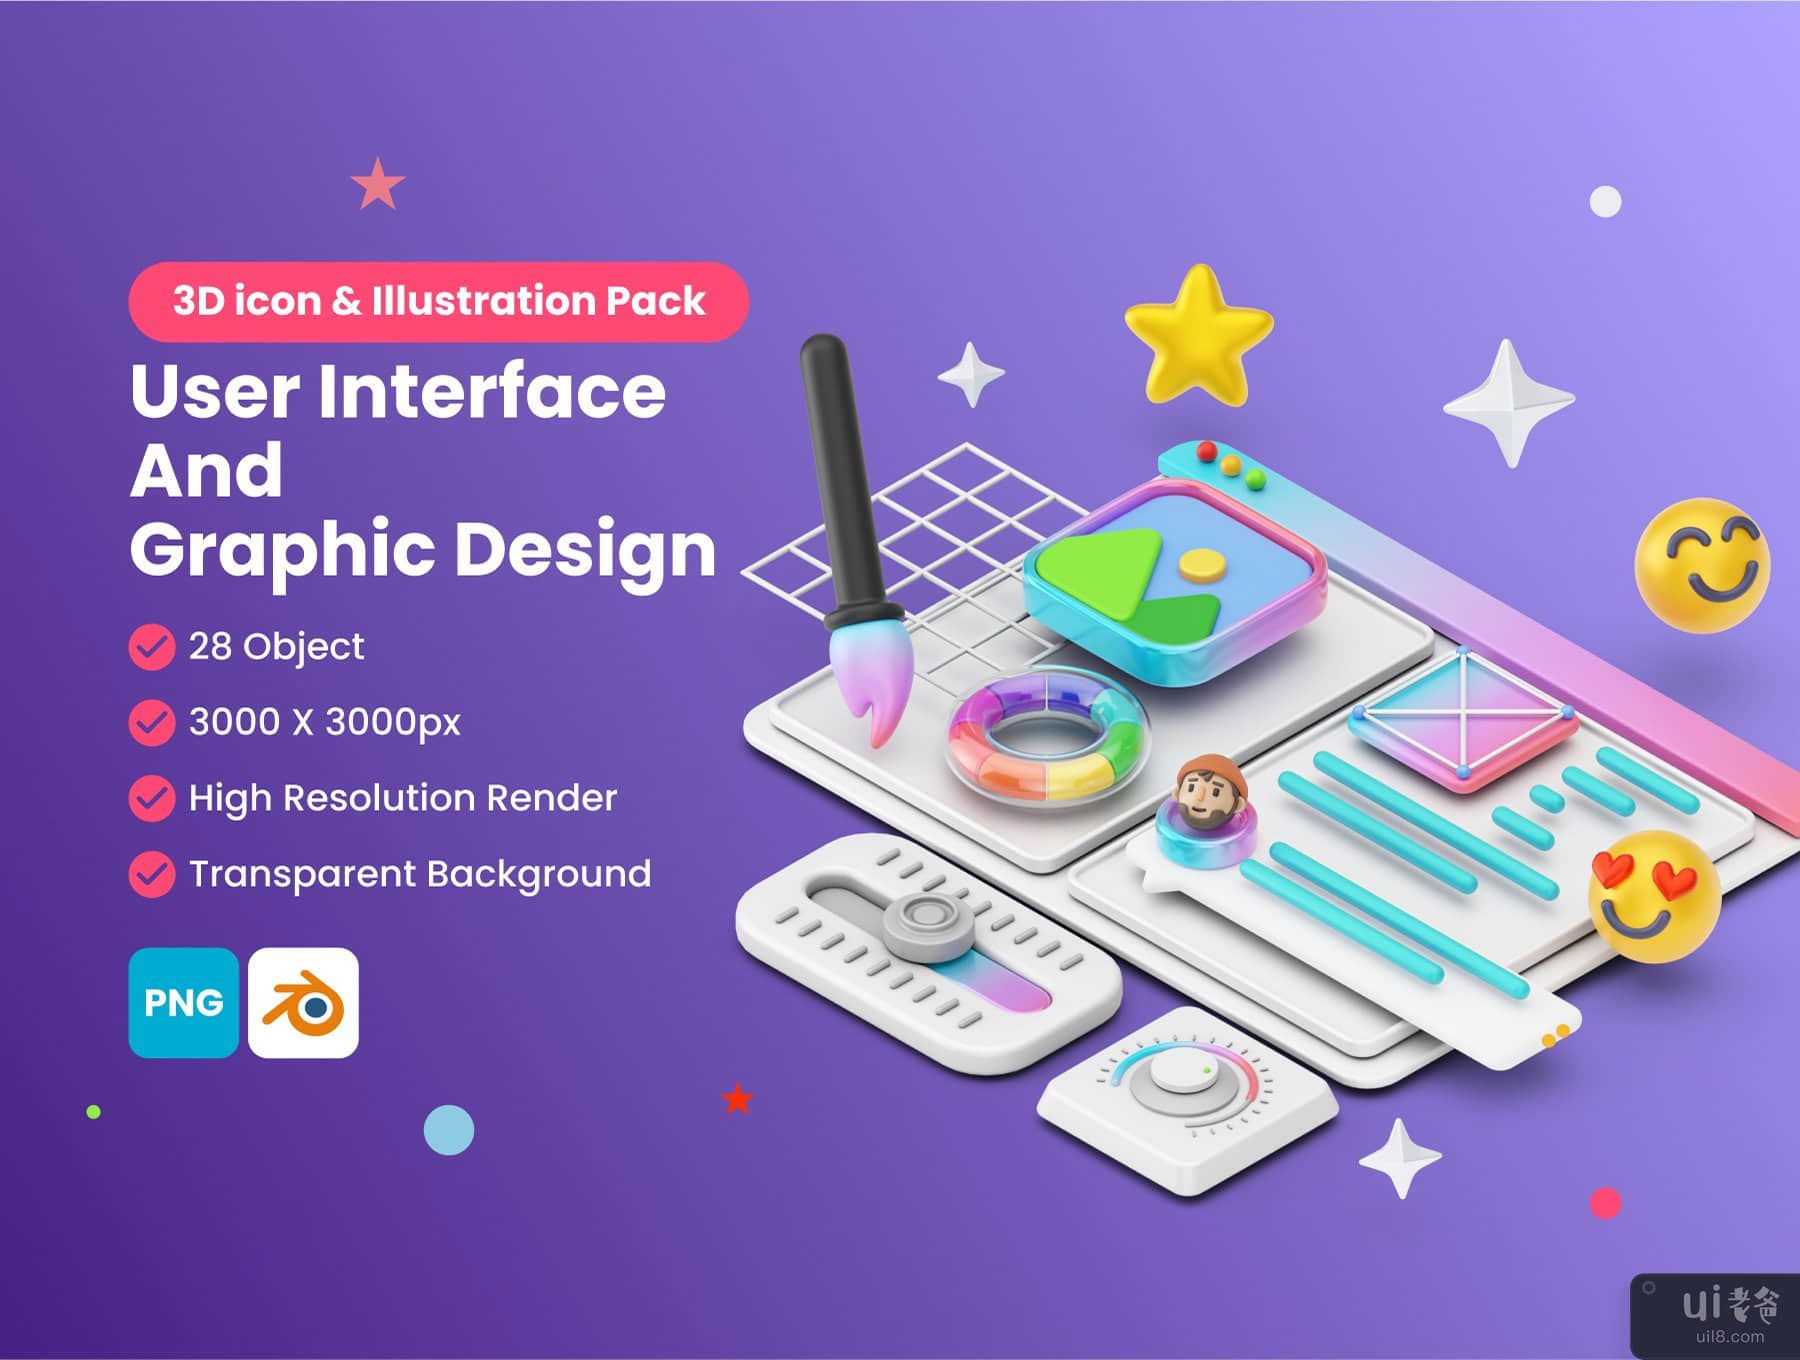 用户界面和平面设计 3D 图标和插图包 (User Interface And Graphic Design 3D Icon & illustration pack)插图7